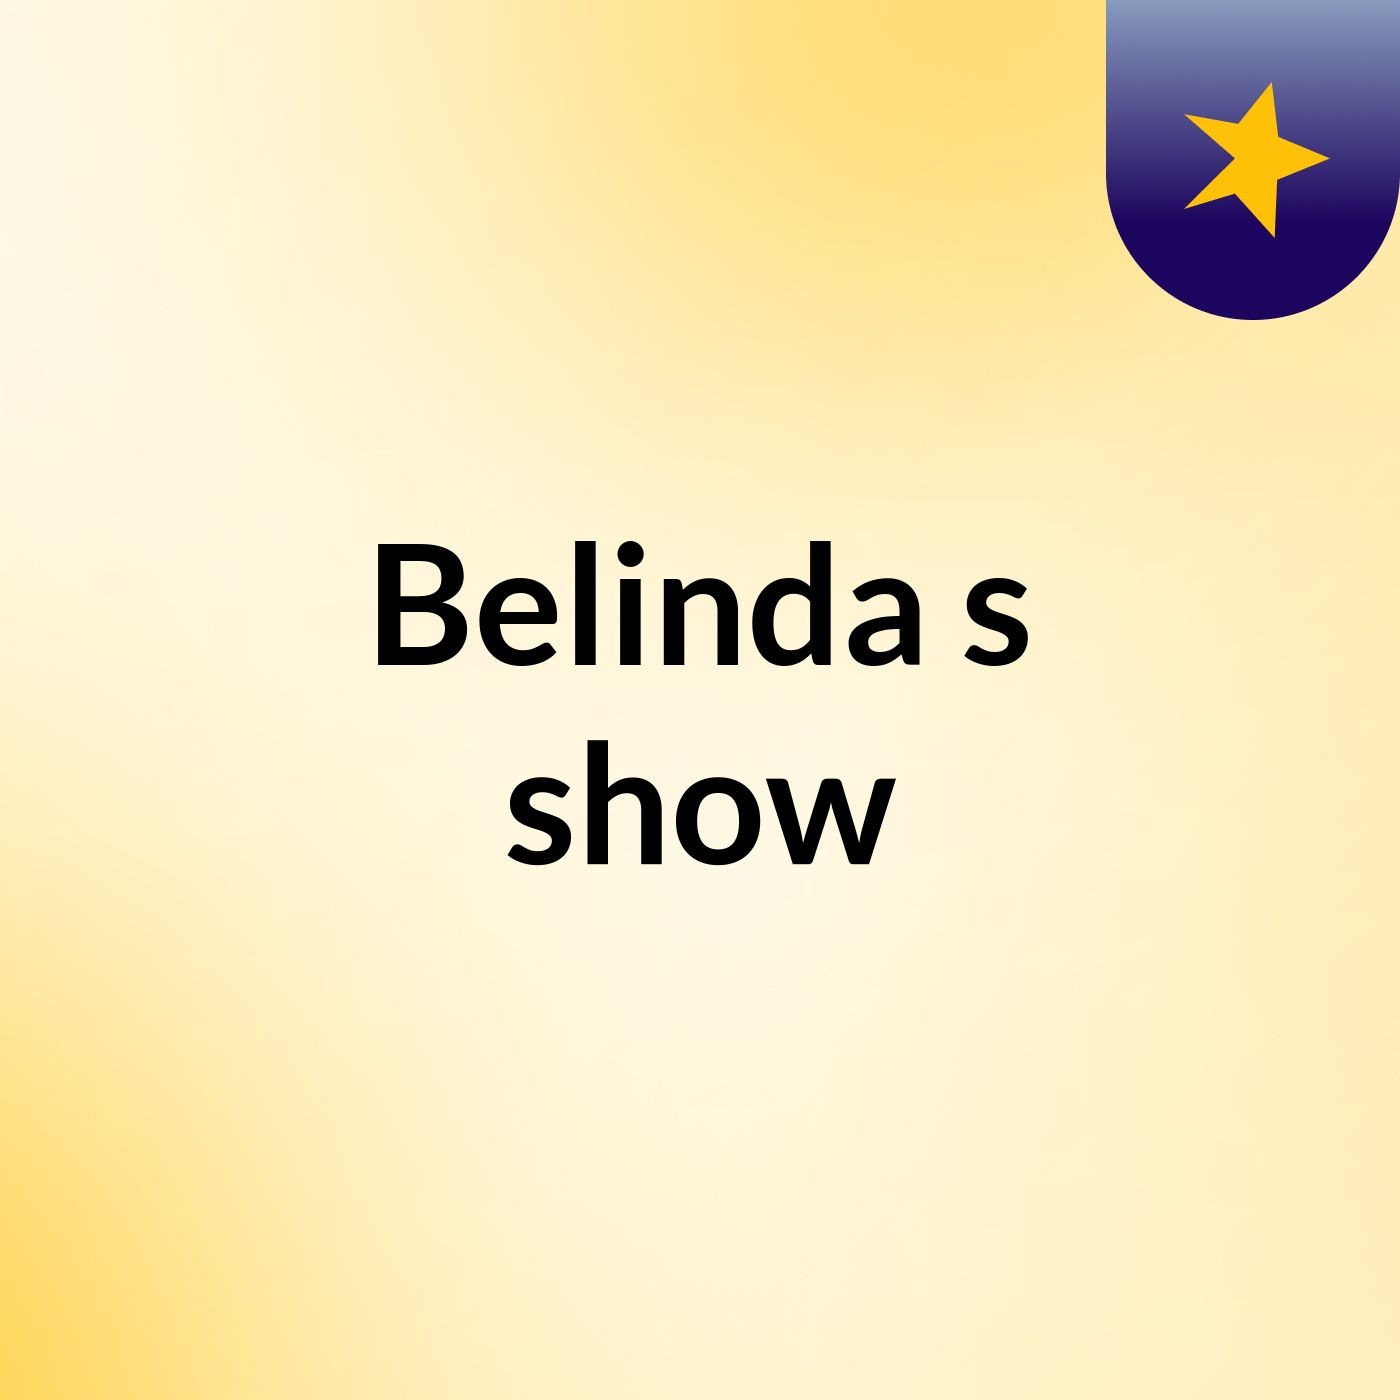 Belinda's show